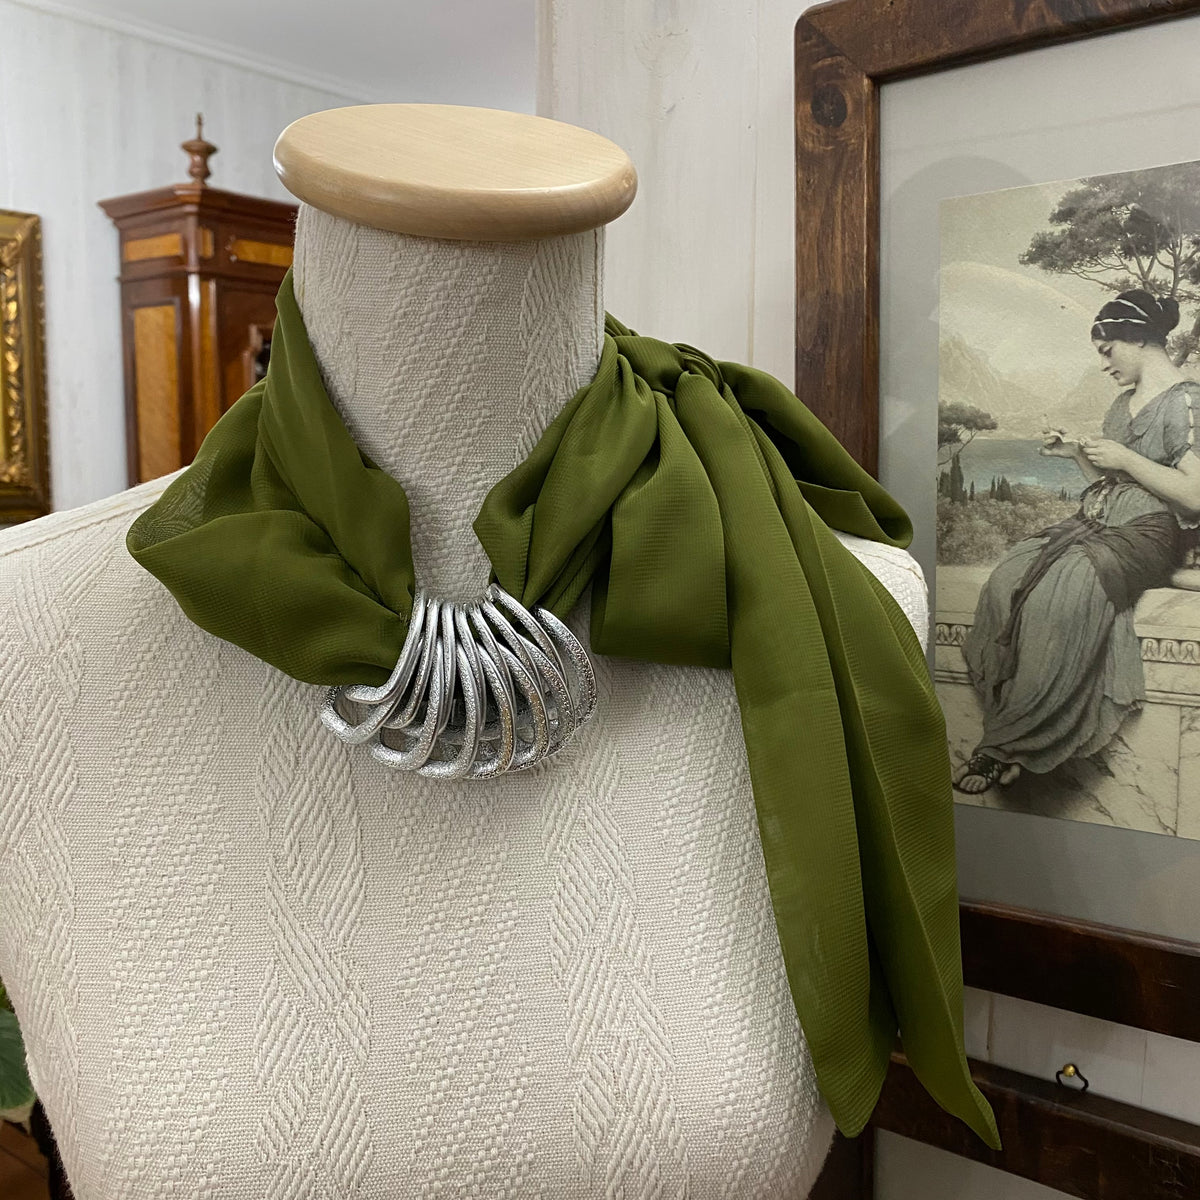 🍂 foulard in pura seta con centrale in perle – Viale del re 33